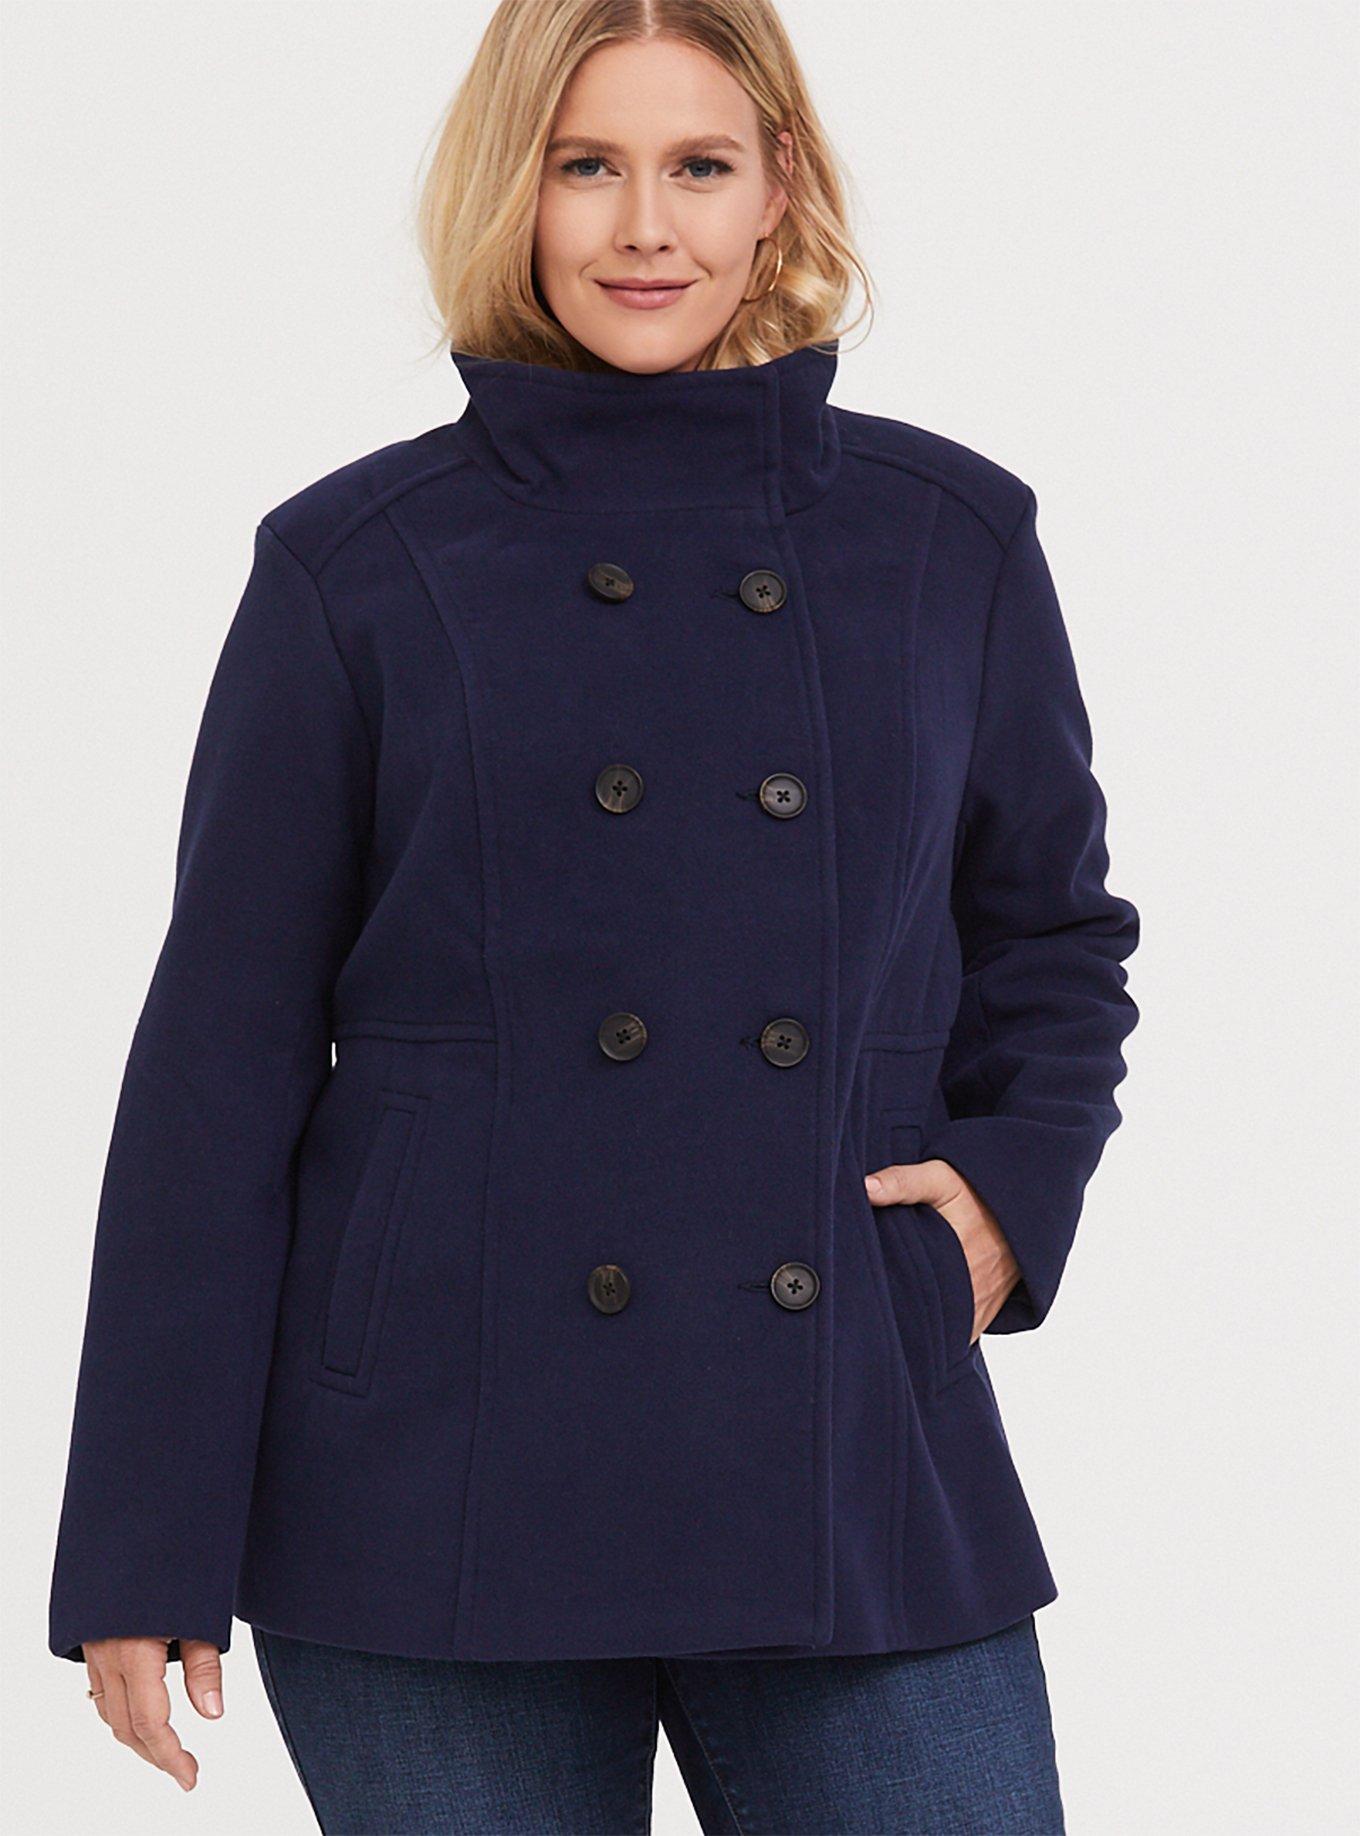 Wool Swing Coat Women, Winter Coat Plus Size, Short Warm Coat 